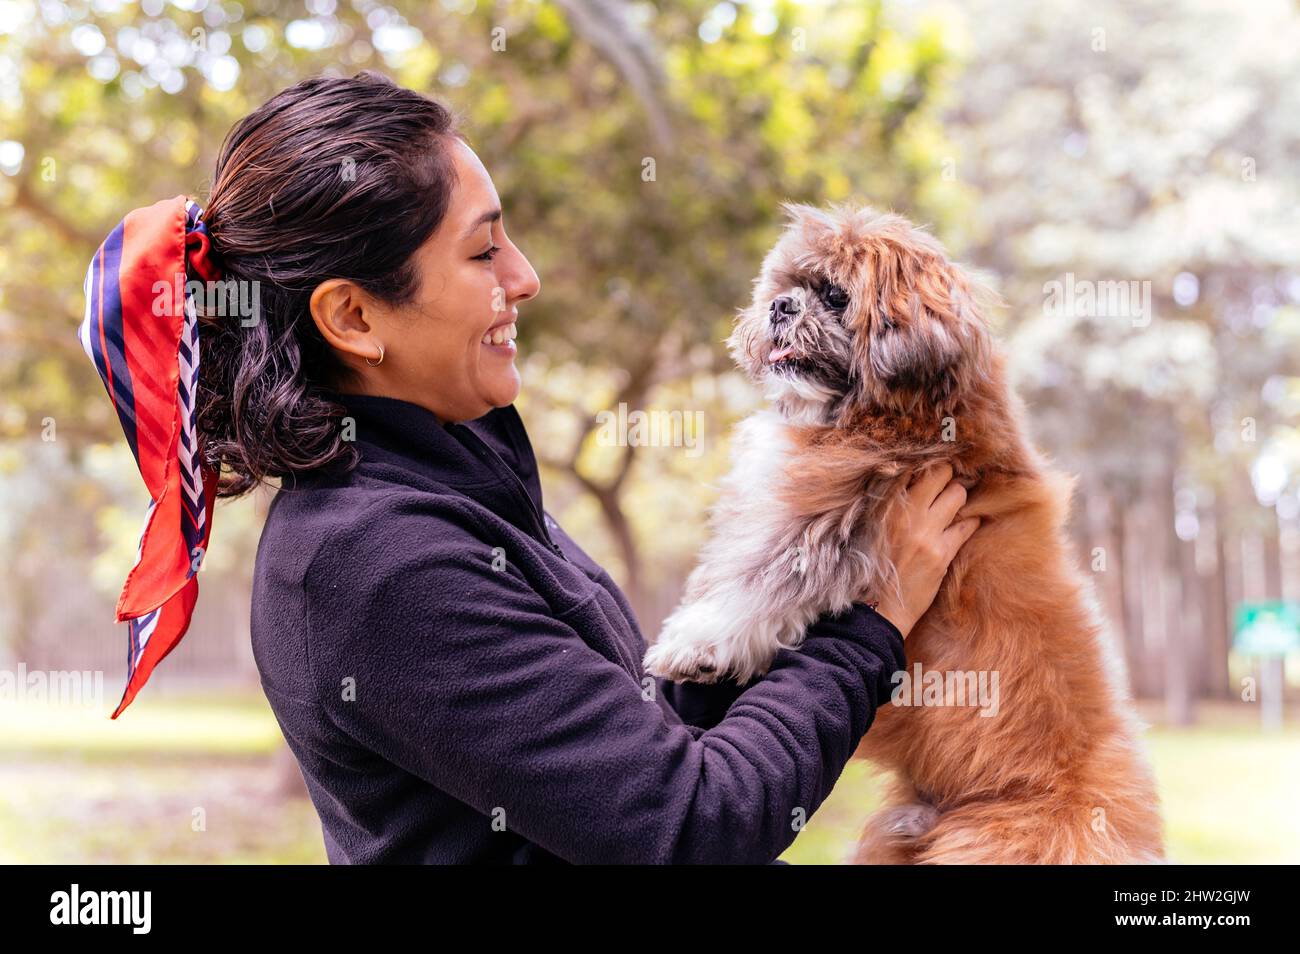 Nette junge Frau umarmt ihren kleinen Welpen. Liebe zwischen Besitzer und Hund. Außenfoto im Park, selektiver Fokus. Lifestyle-Konzept Stockfoto